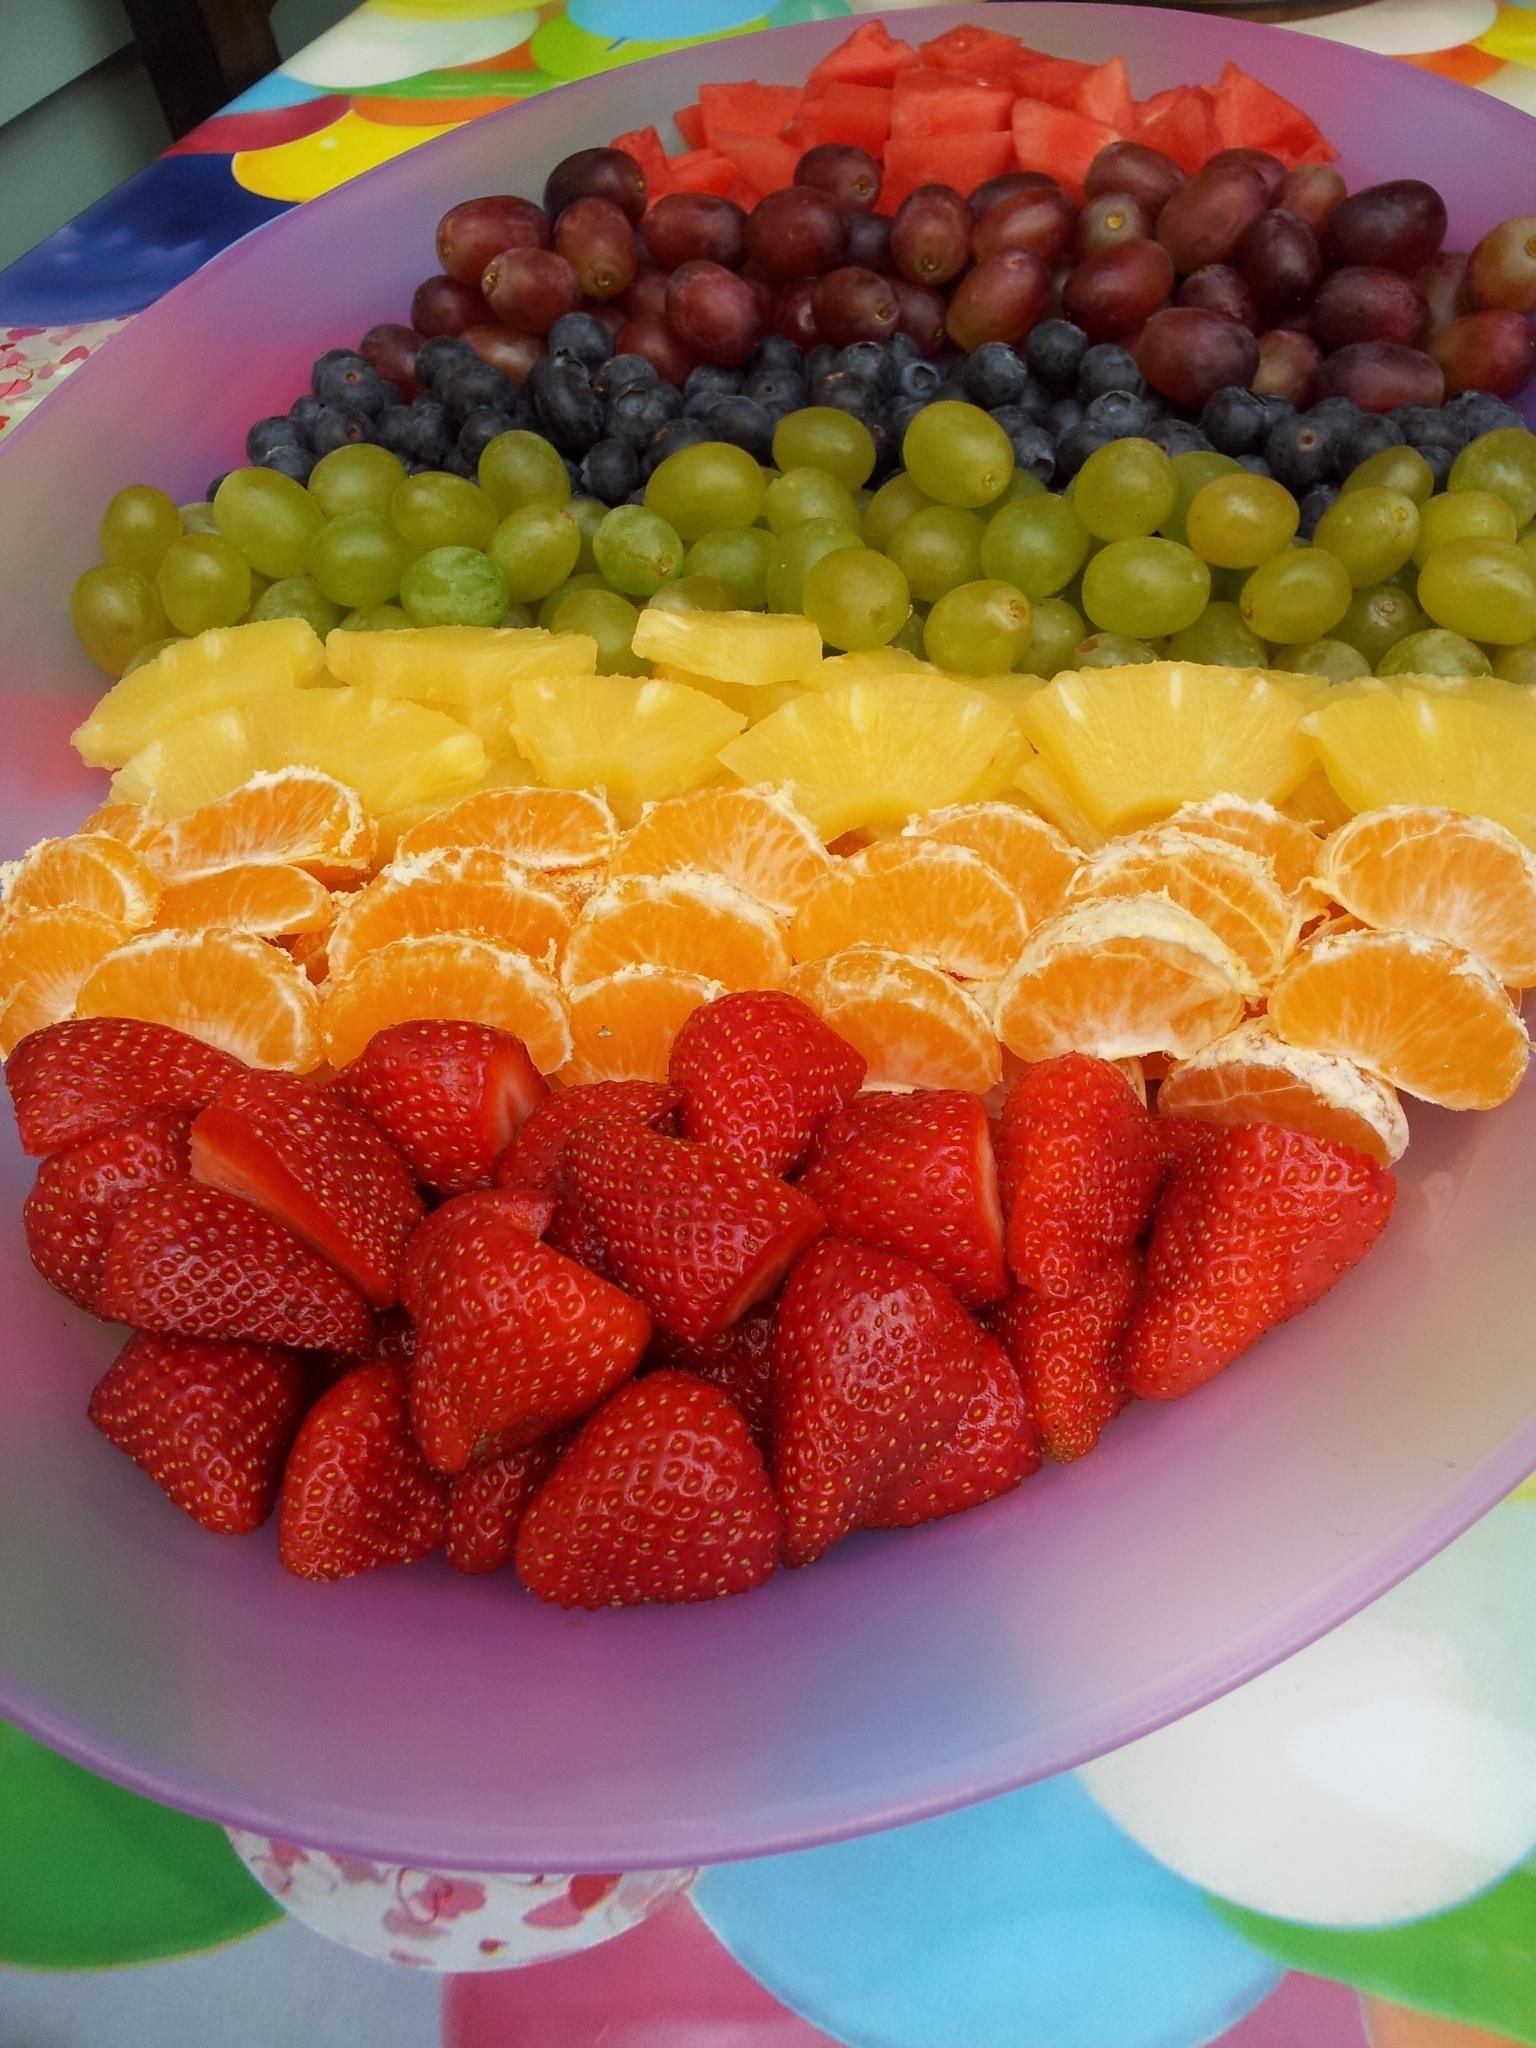 Фото как подать фрукты на стол фото